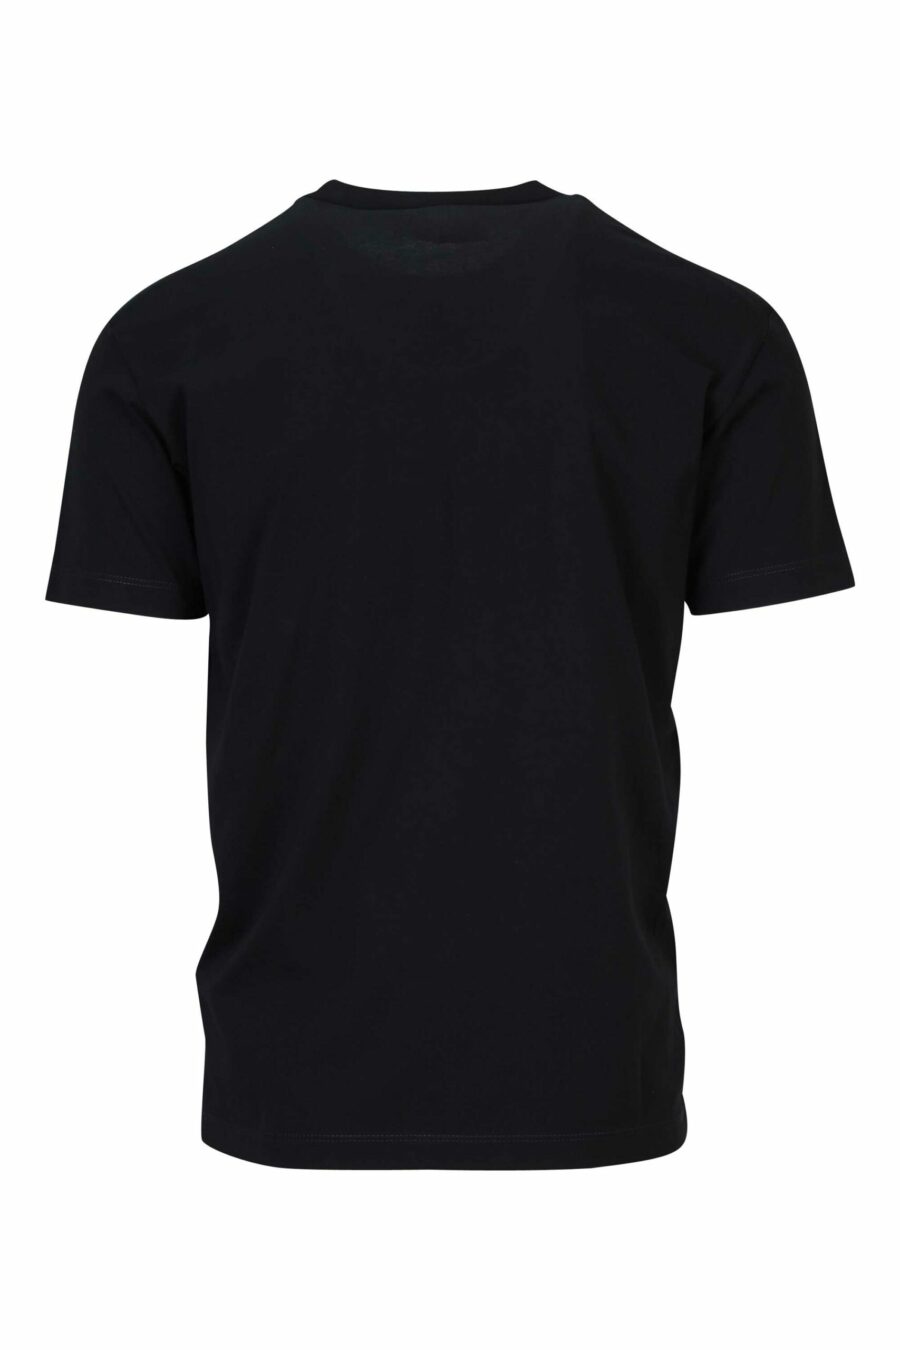 T-shirt noir avec maxilogo "top" - 8054148570927 1 à l'échelle